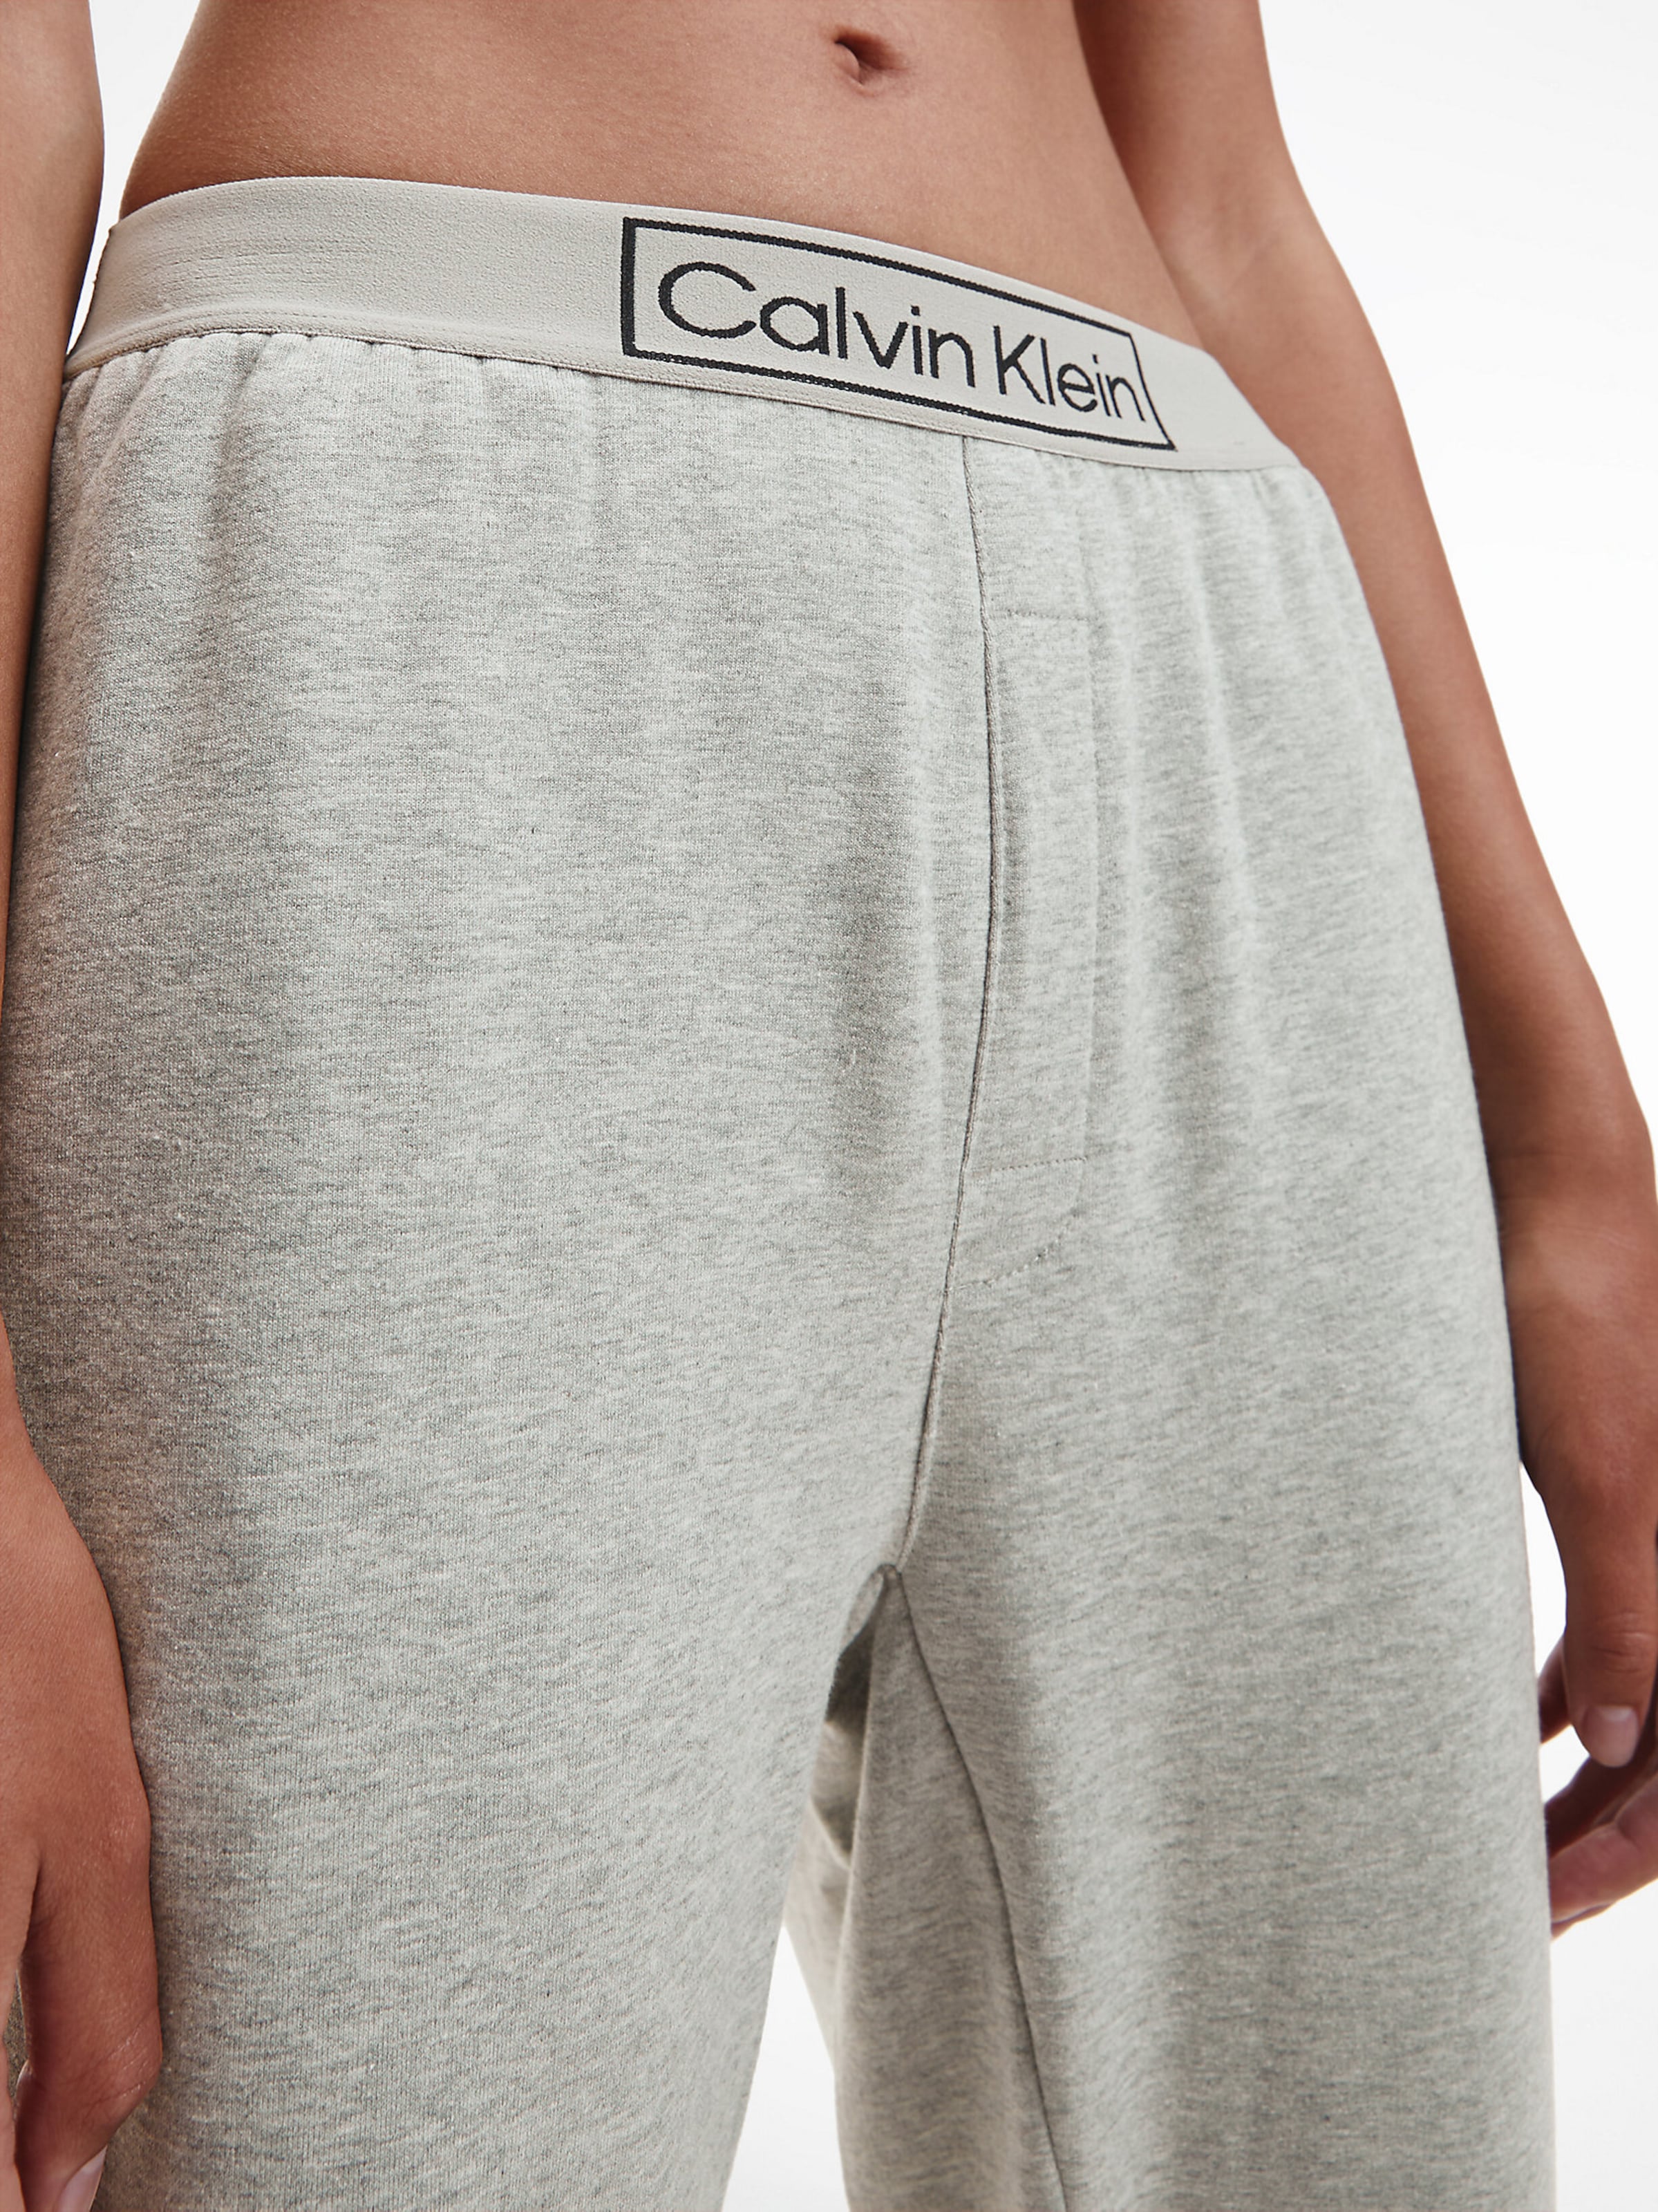 Calvin Klein Men's Checkered Sleep Pants - Perth Blue/White | Catch.com.au